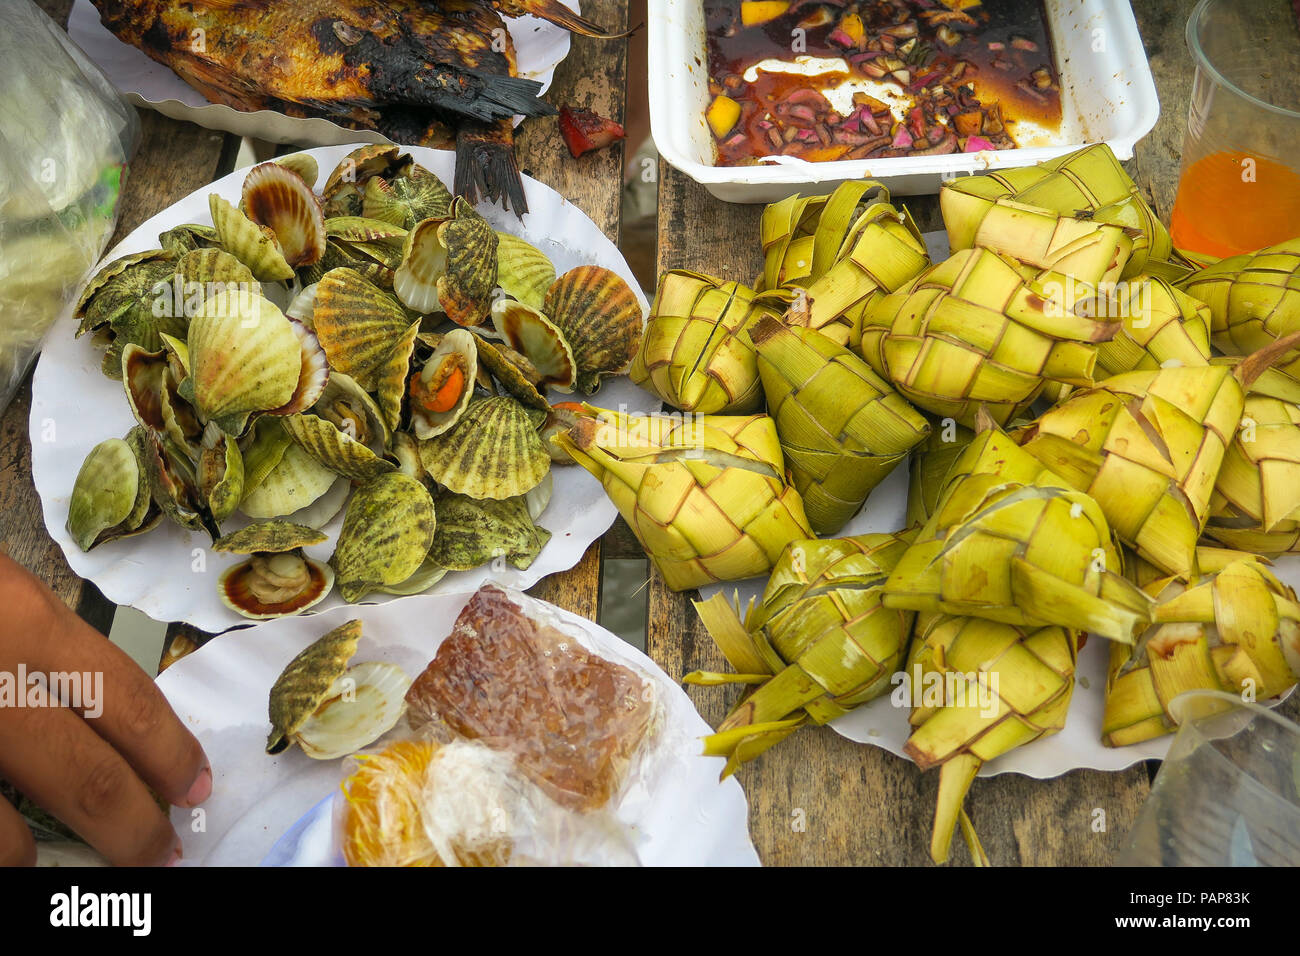 Filipino seafood &picnic food consisting of Clams, Fried fish, hanging rice (puso) at a beach party - Bantayan Island, Cebu - Philippines Stock Photo